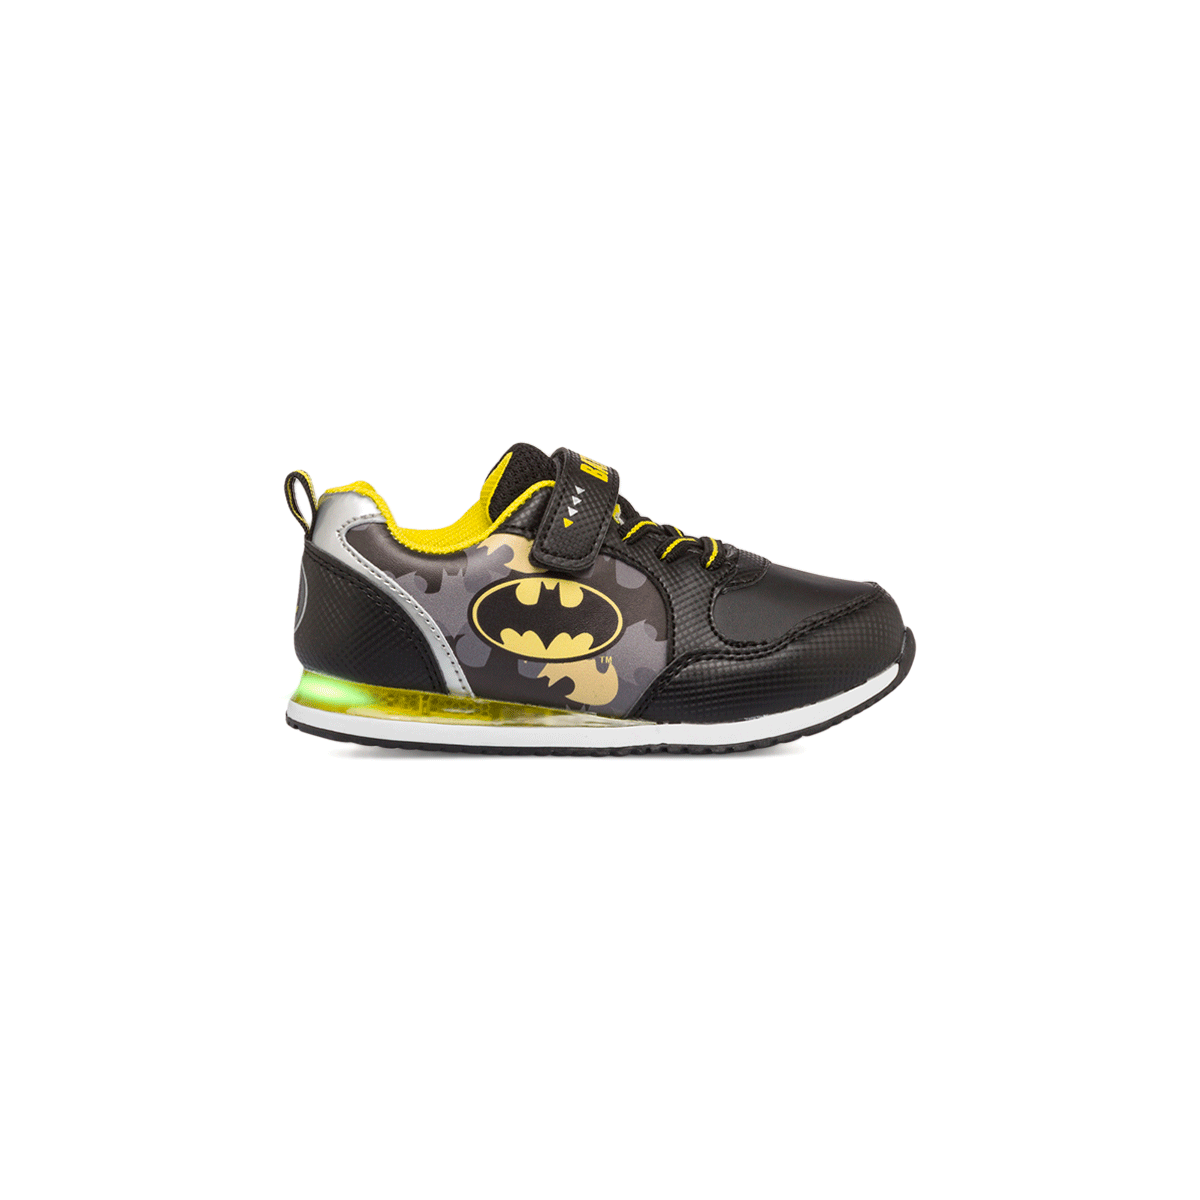 Sneakers primi passi nere da bambino con luci e stampa Batman, Scarpe Primi passi, SKU s332000085, Immagine 0